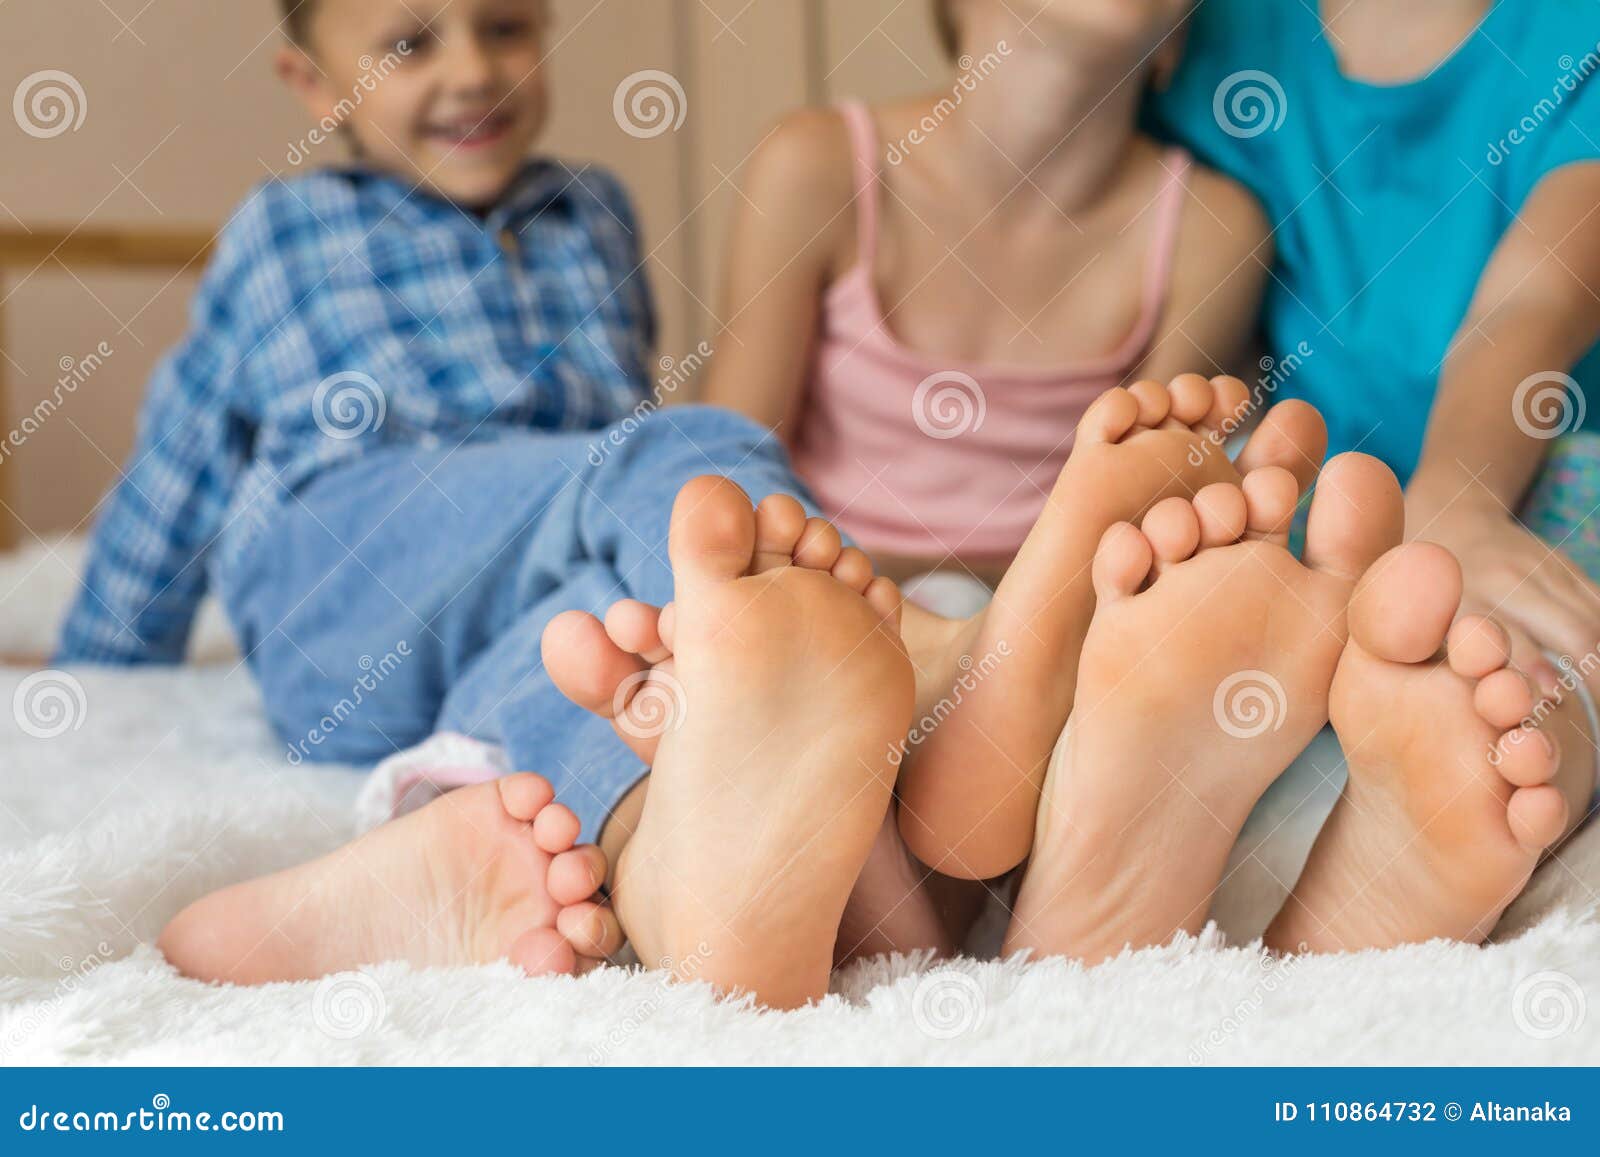 Sat foot. Пятки сестры. Сестры босиком. Босые ноги сестрёнки. Feet дети.